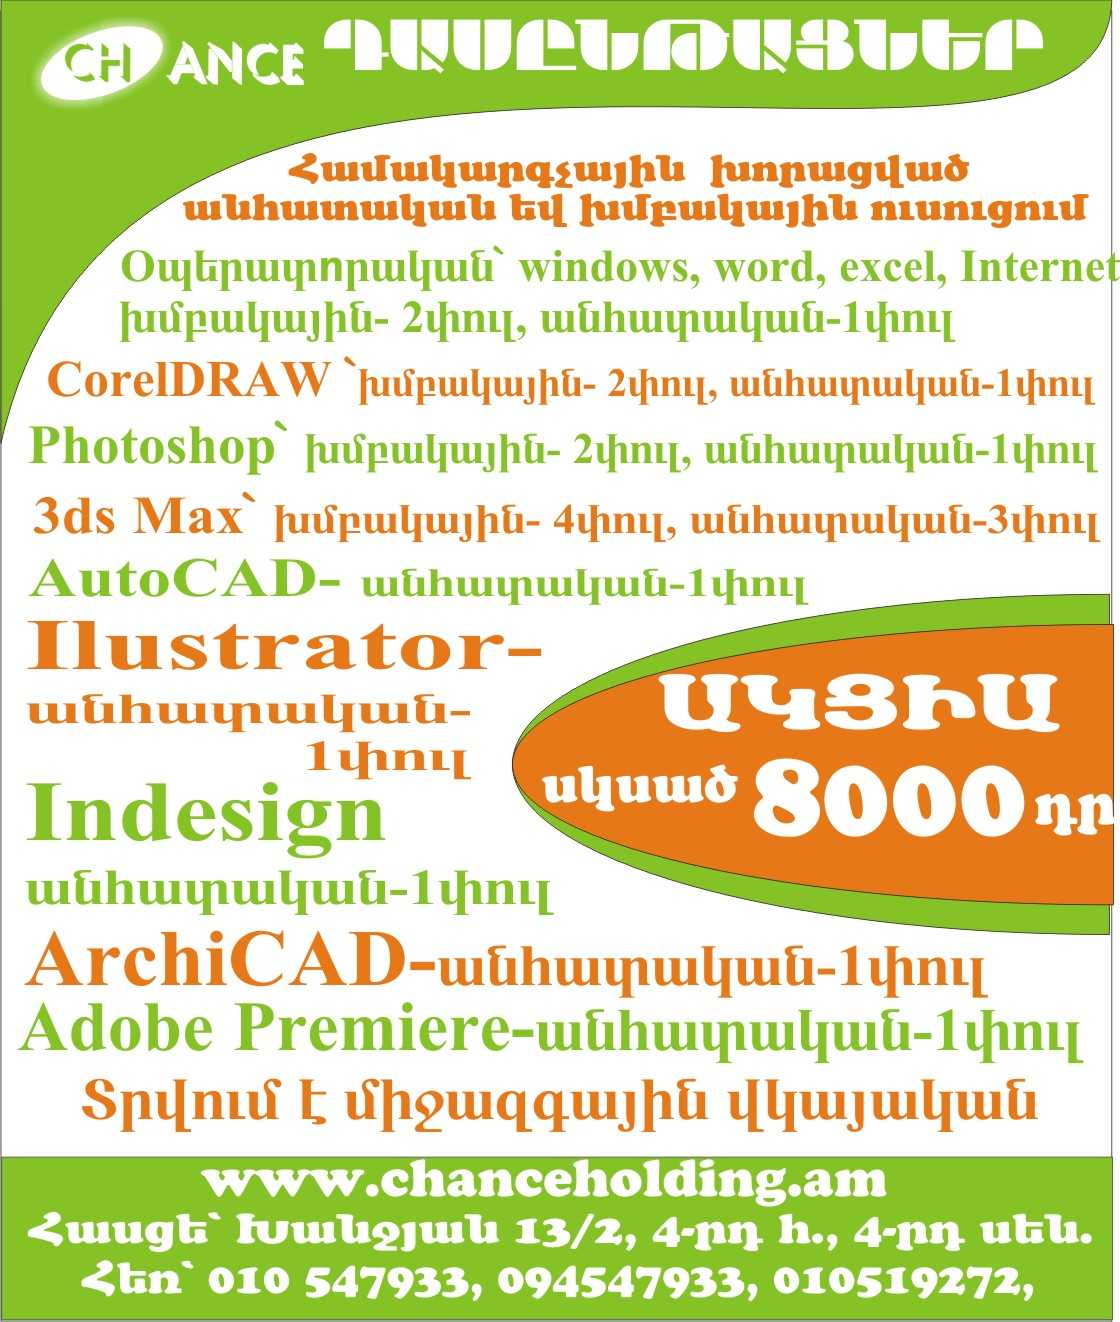 Photoshop dasyntacner, usucum, kurser, akcia 6000 dr, Photoshop ծրագրի ուսուցում կուրսեր, դասընթացներ ակցիա 6000 դր